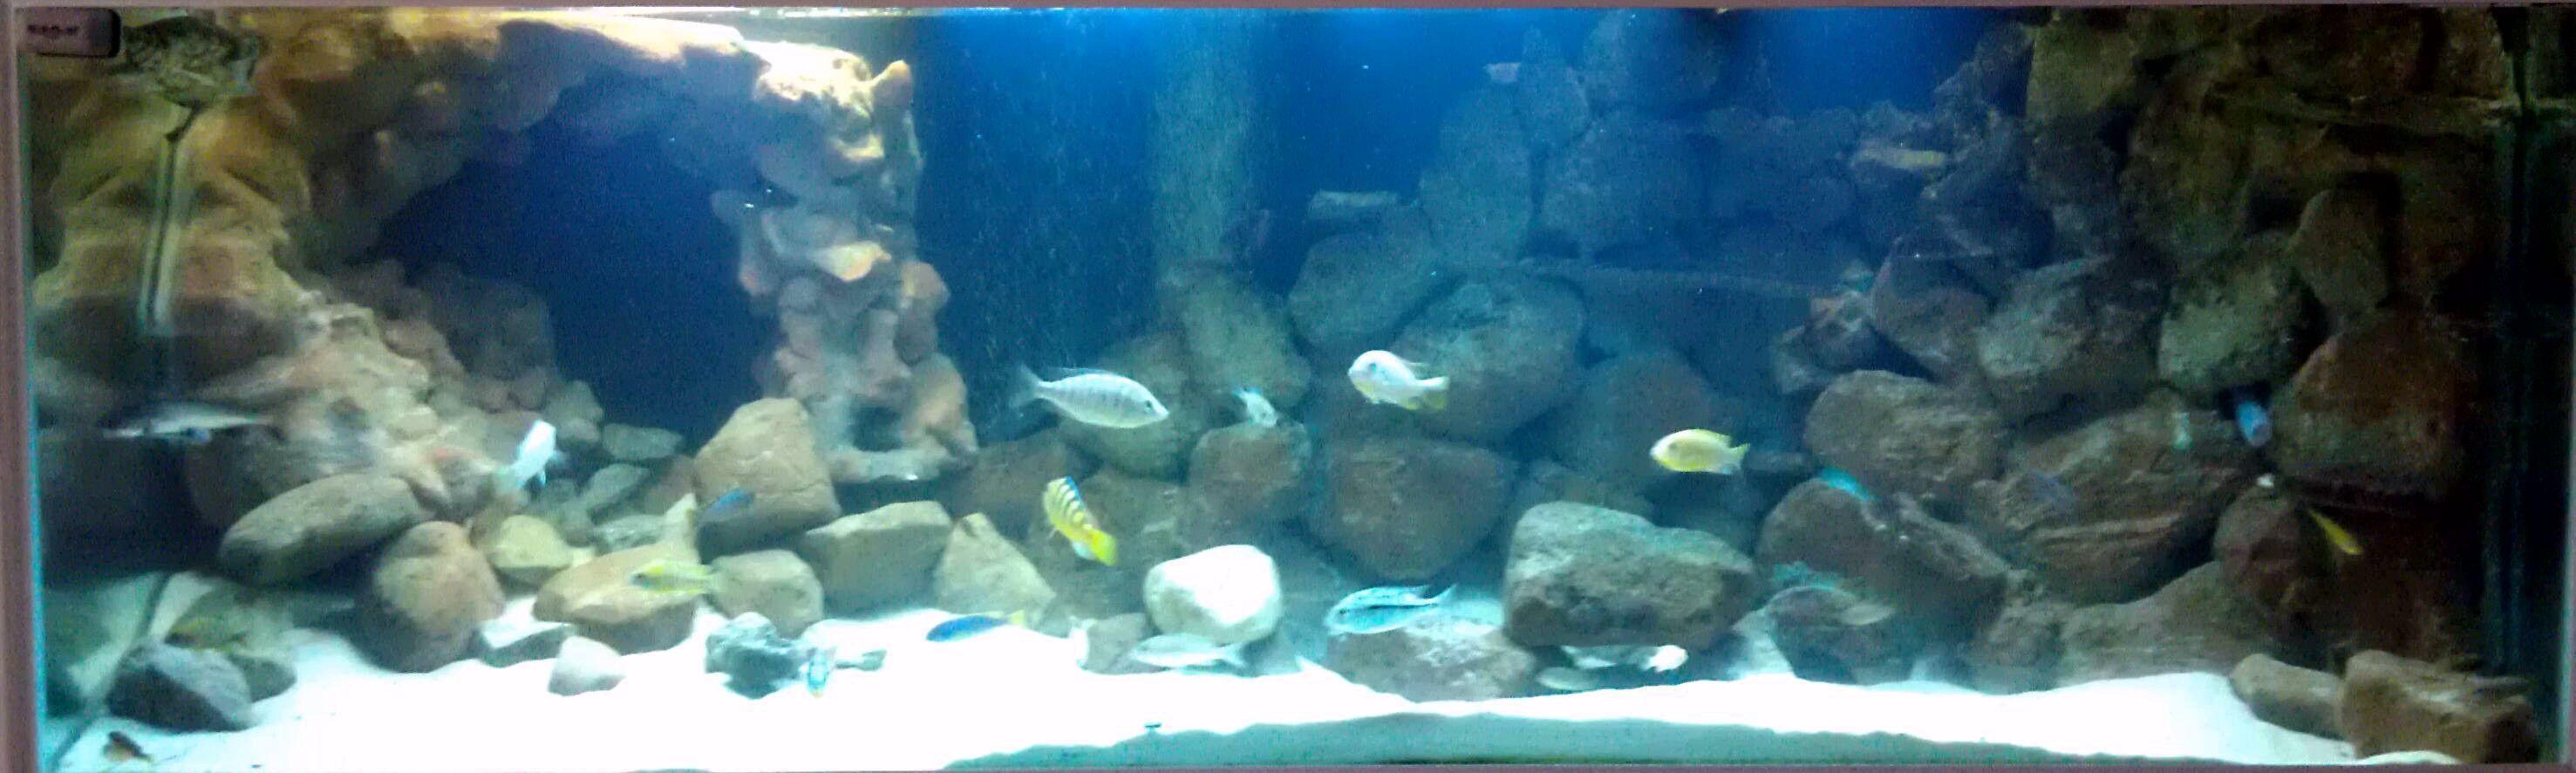 3D freshwater aquarium background